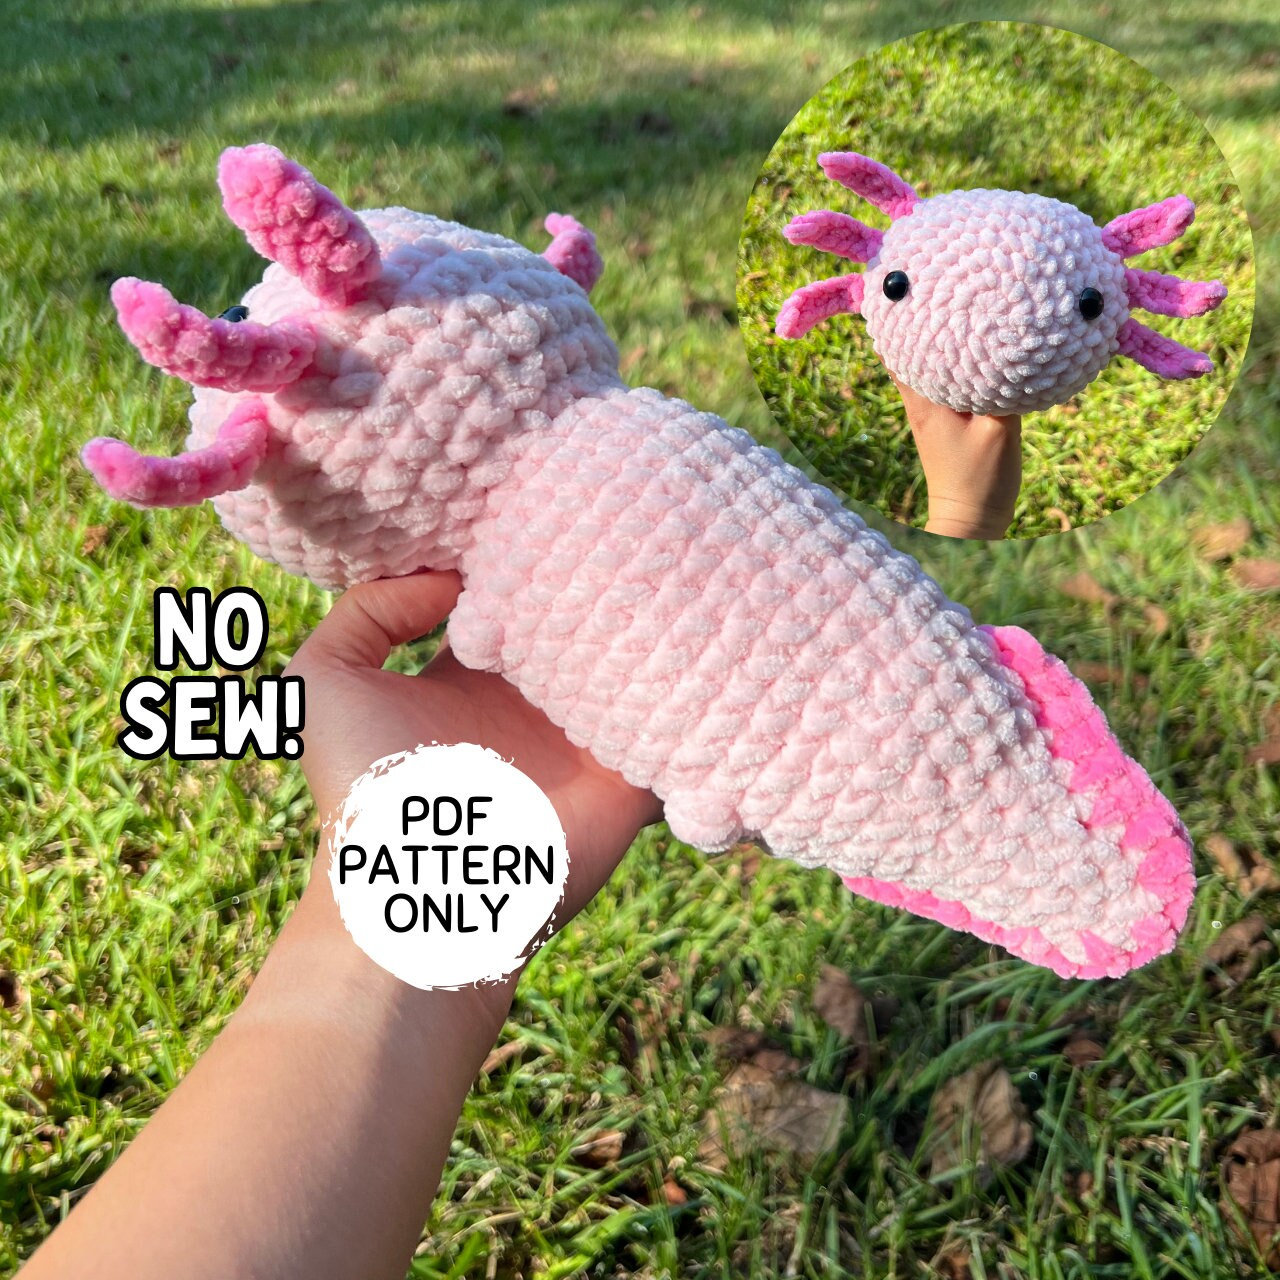  CROCHET BOX Crochet Kit for Beginners: 3 PCS Axolotl